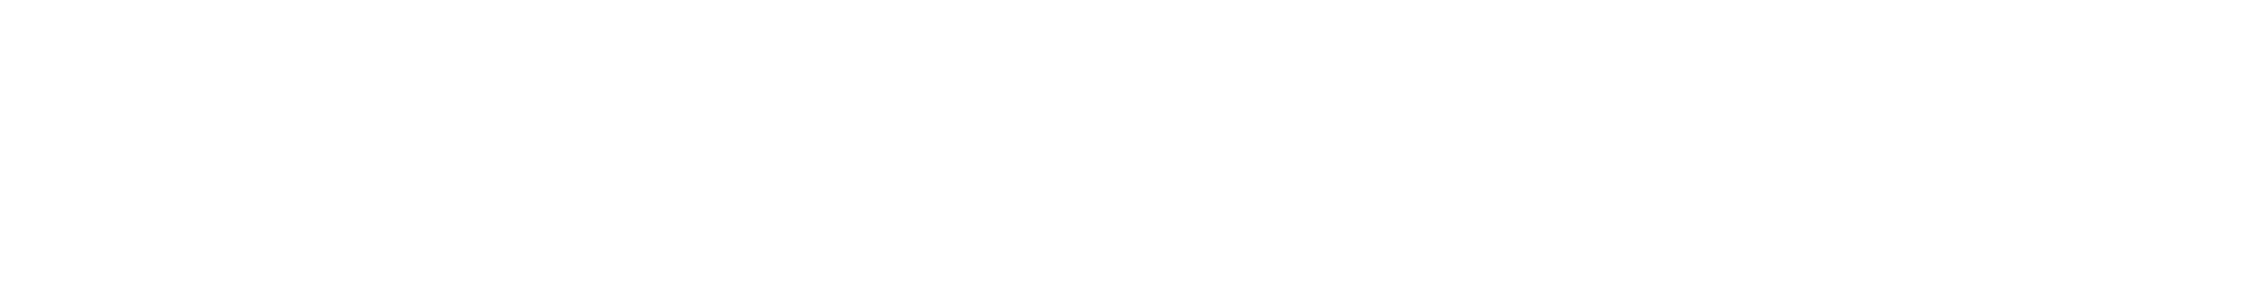 Orthopedics footer logo